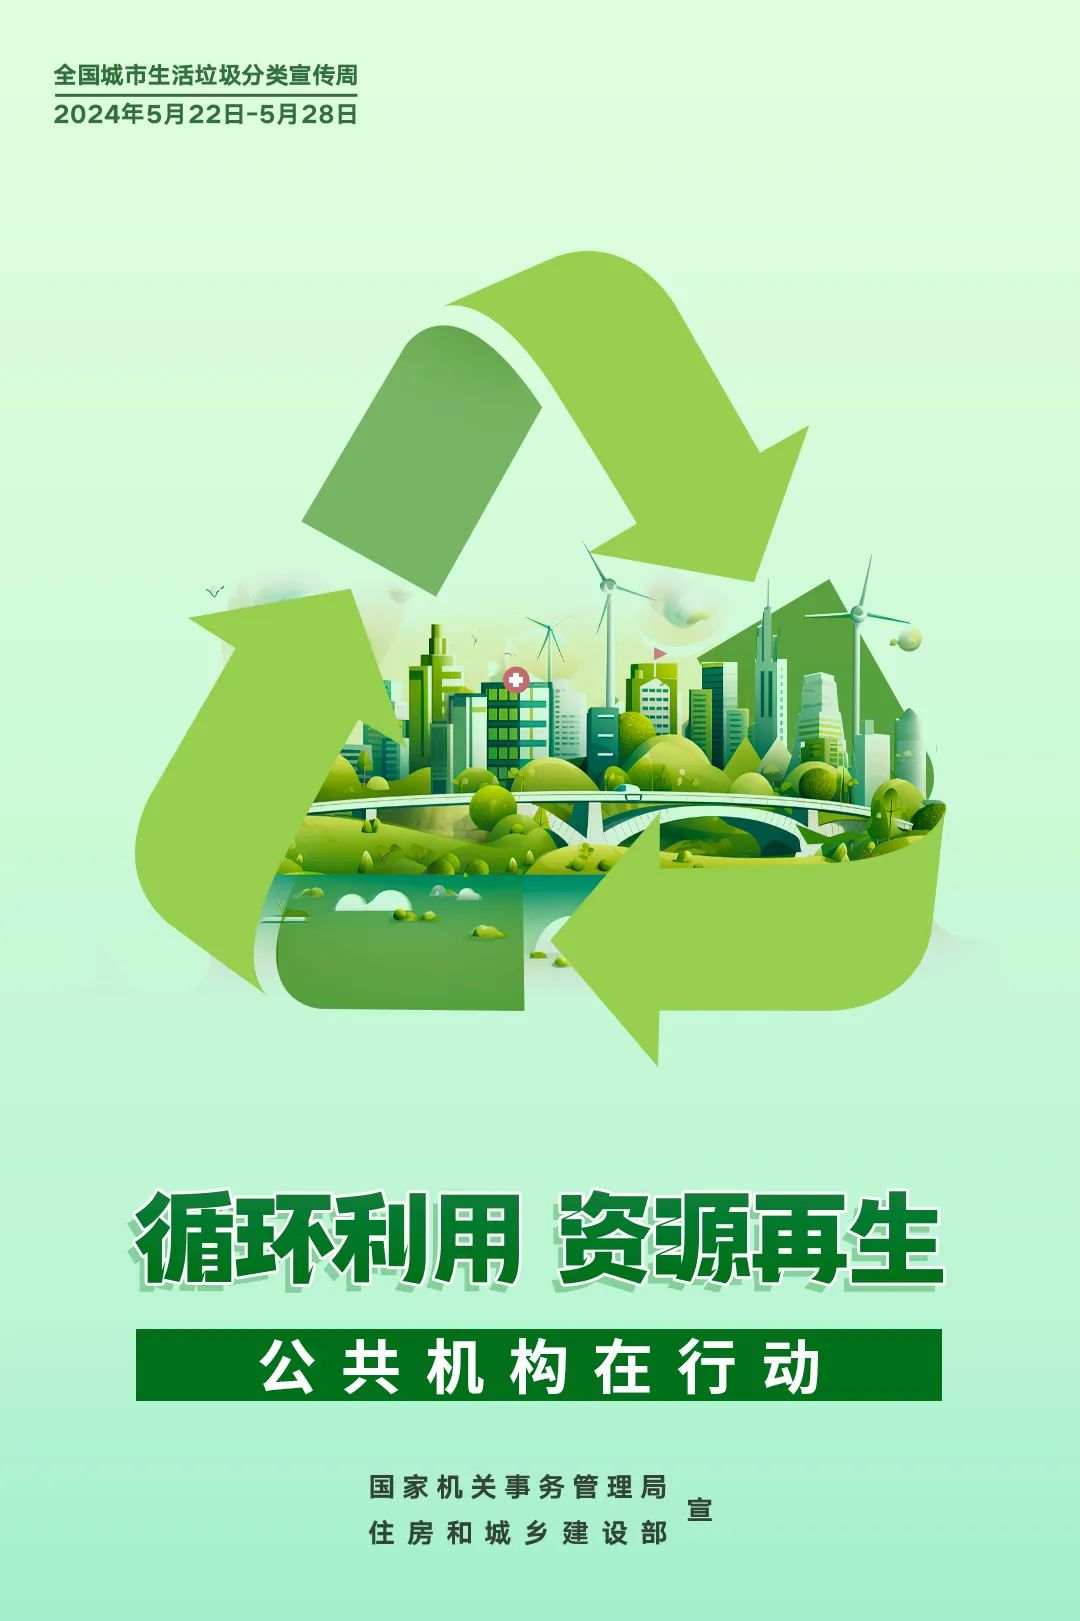 全国城市生活垃圾分类宣传周 | 公共机构生活垃圾分类主题宣传海报发布